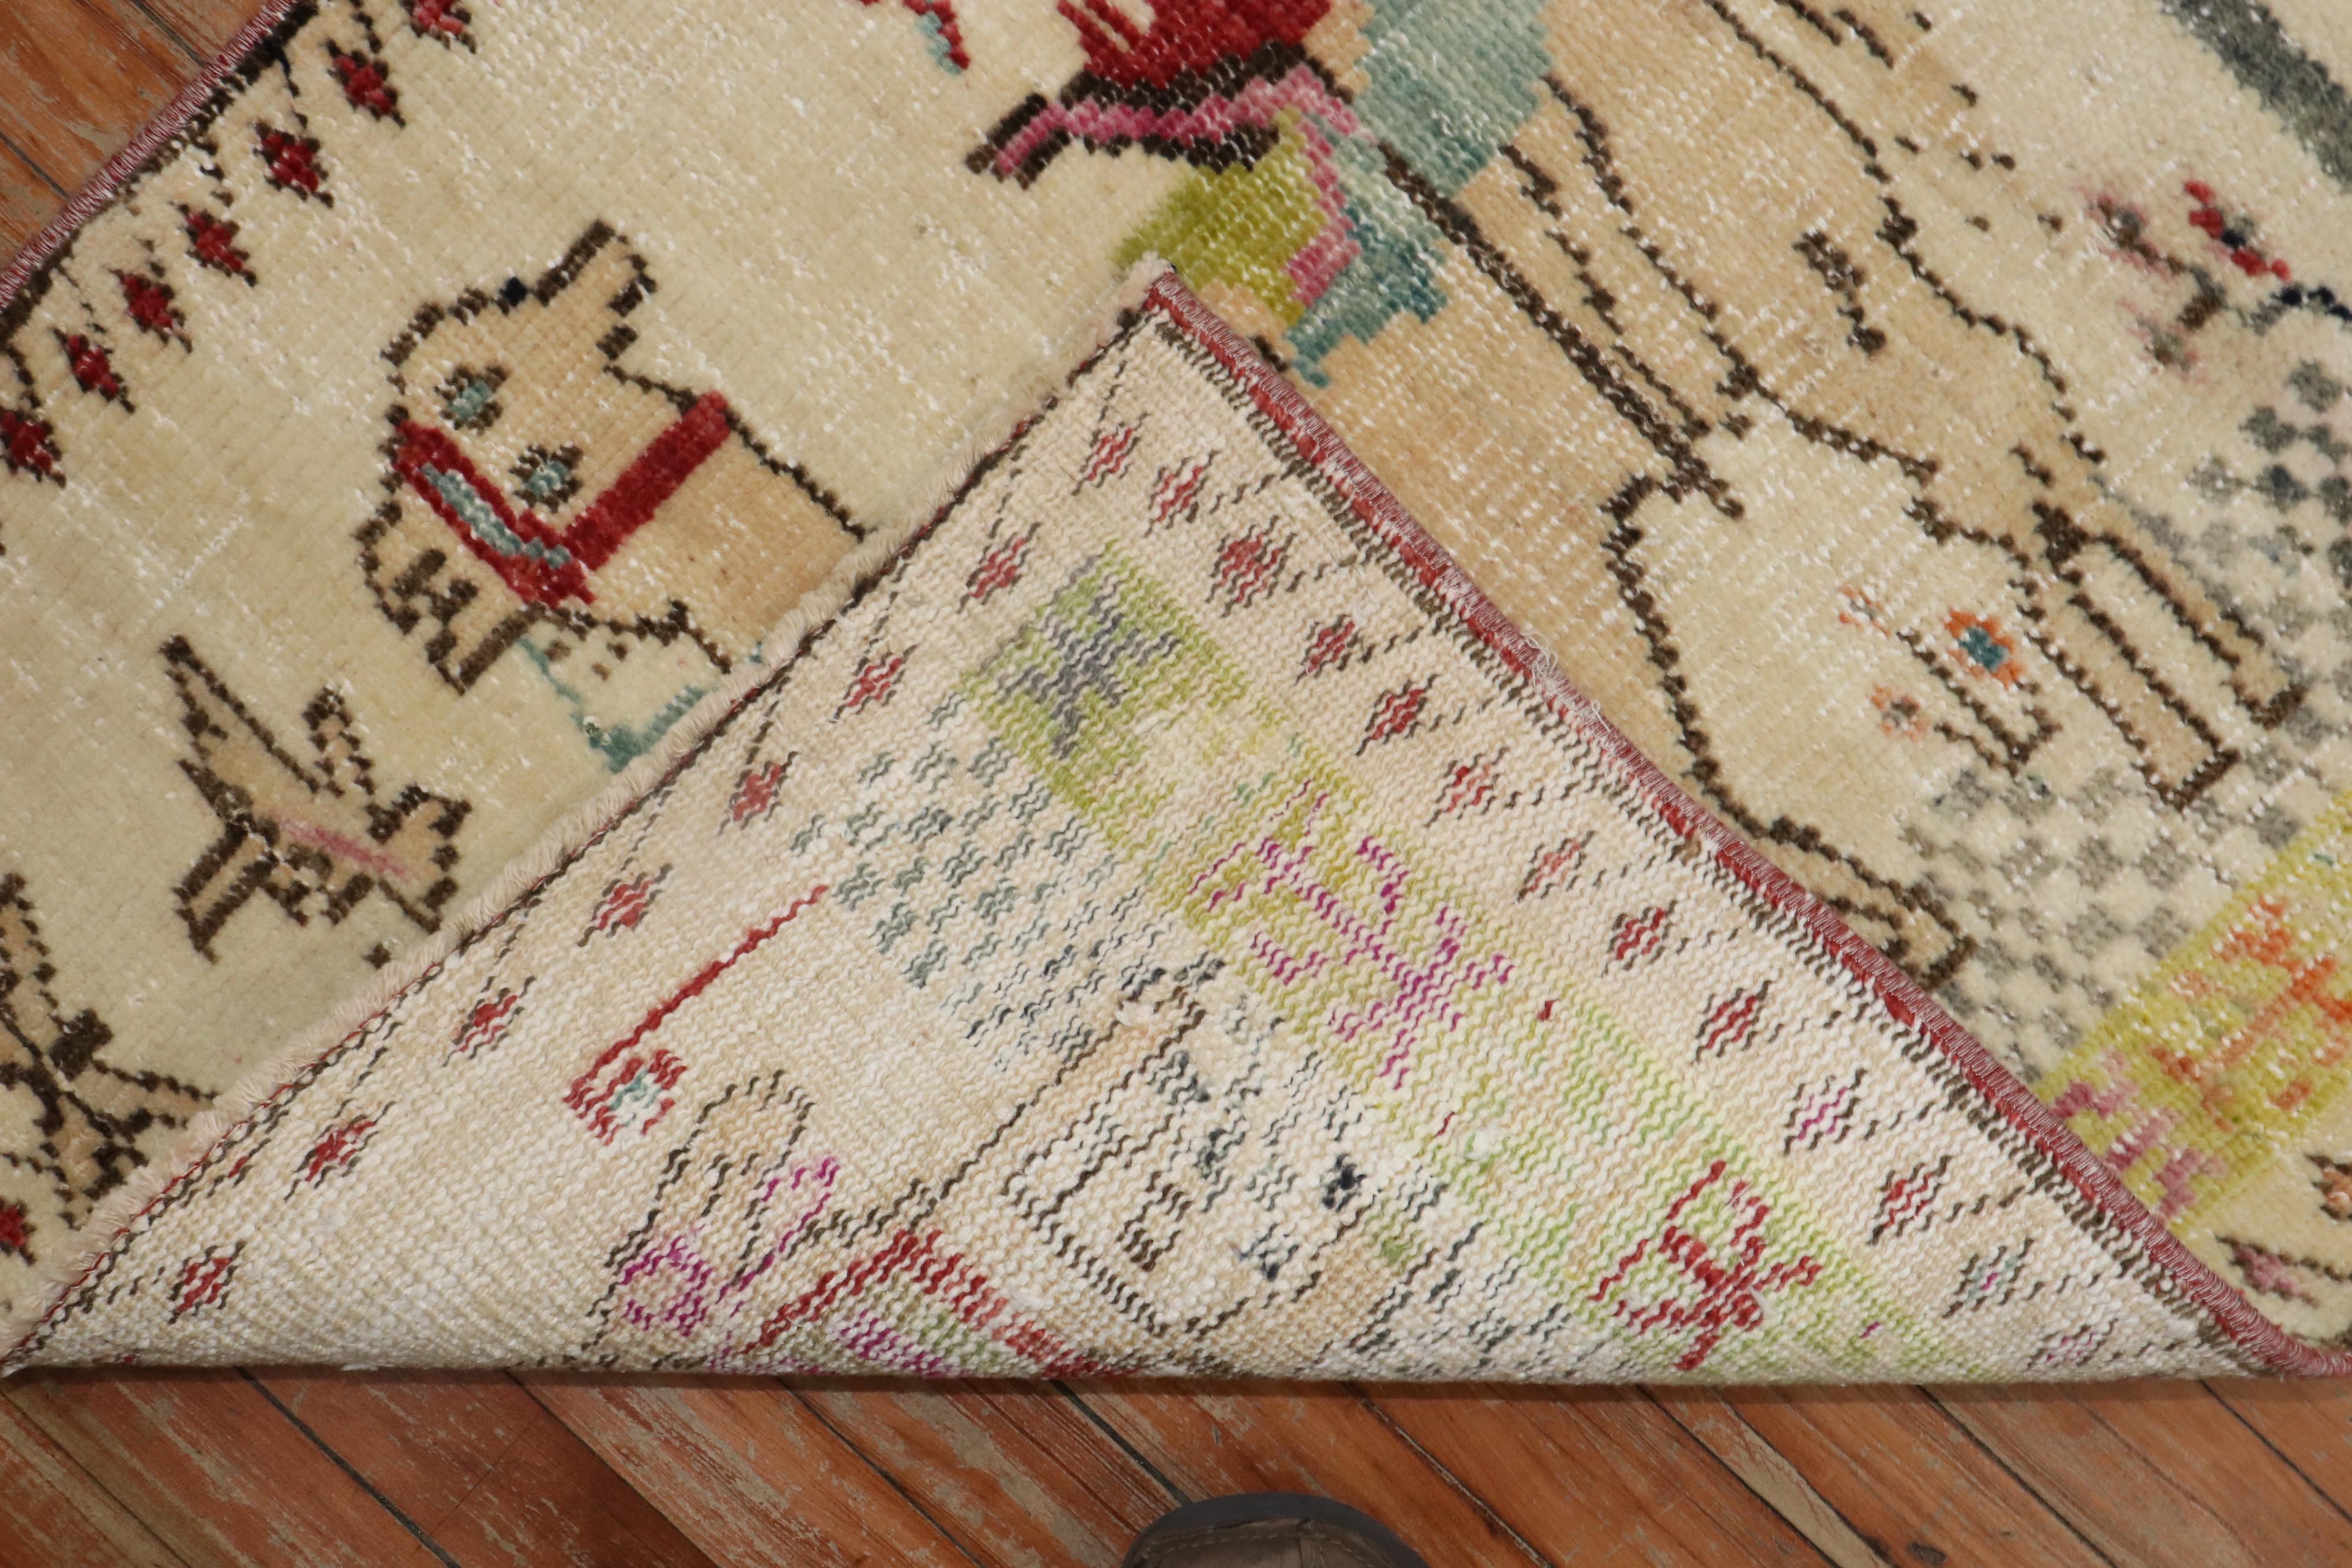 Türkischer anatolischer Teppich aus der Mitte des 20. Jahrhunderts mit einem malerischen Muster, das einen Esel und ein Kamel darstellt.

Größe: 2'5'' x 3'4''.